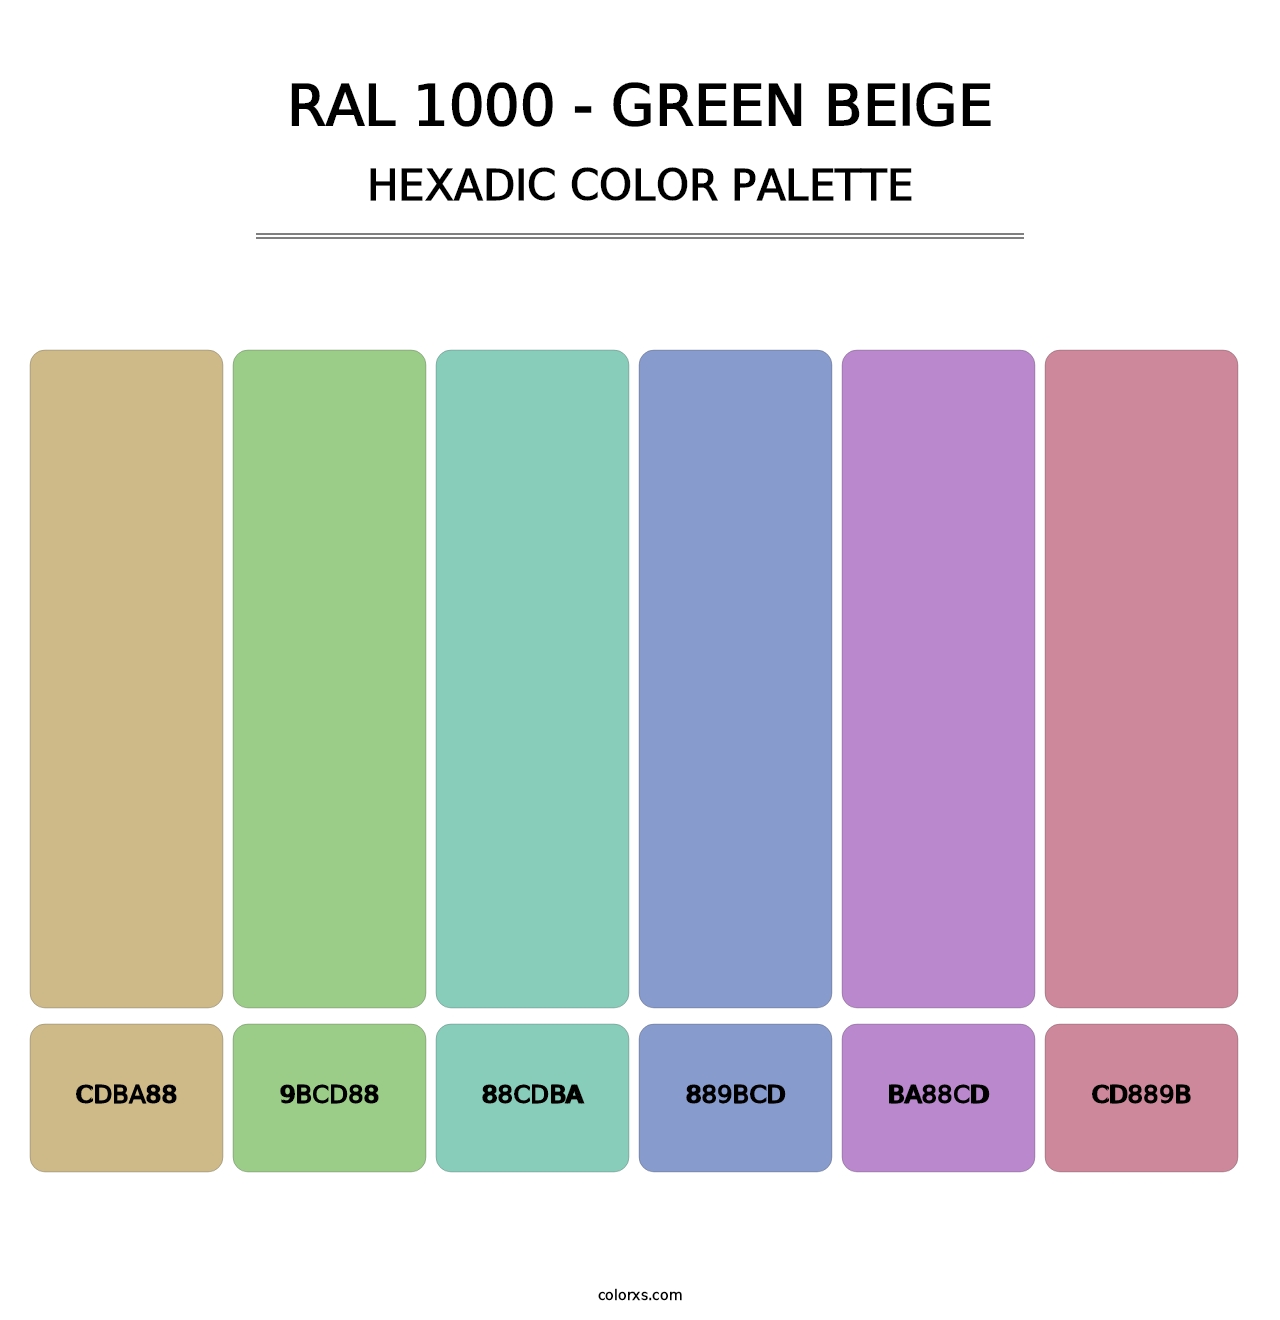 RAL 1000 - Green Beige - Hexadic Color Palette